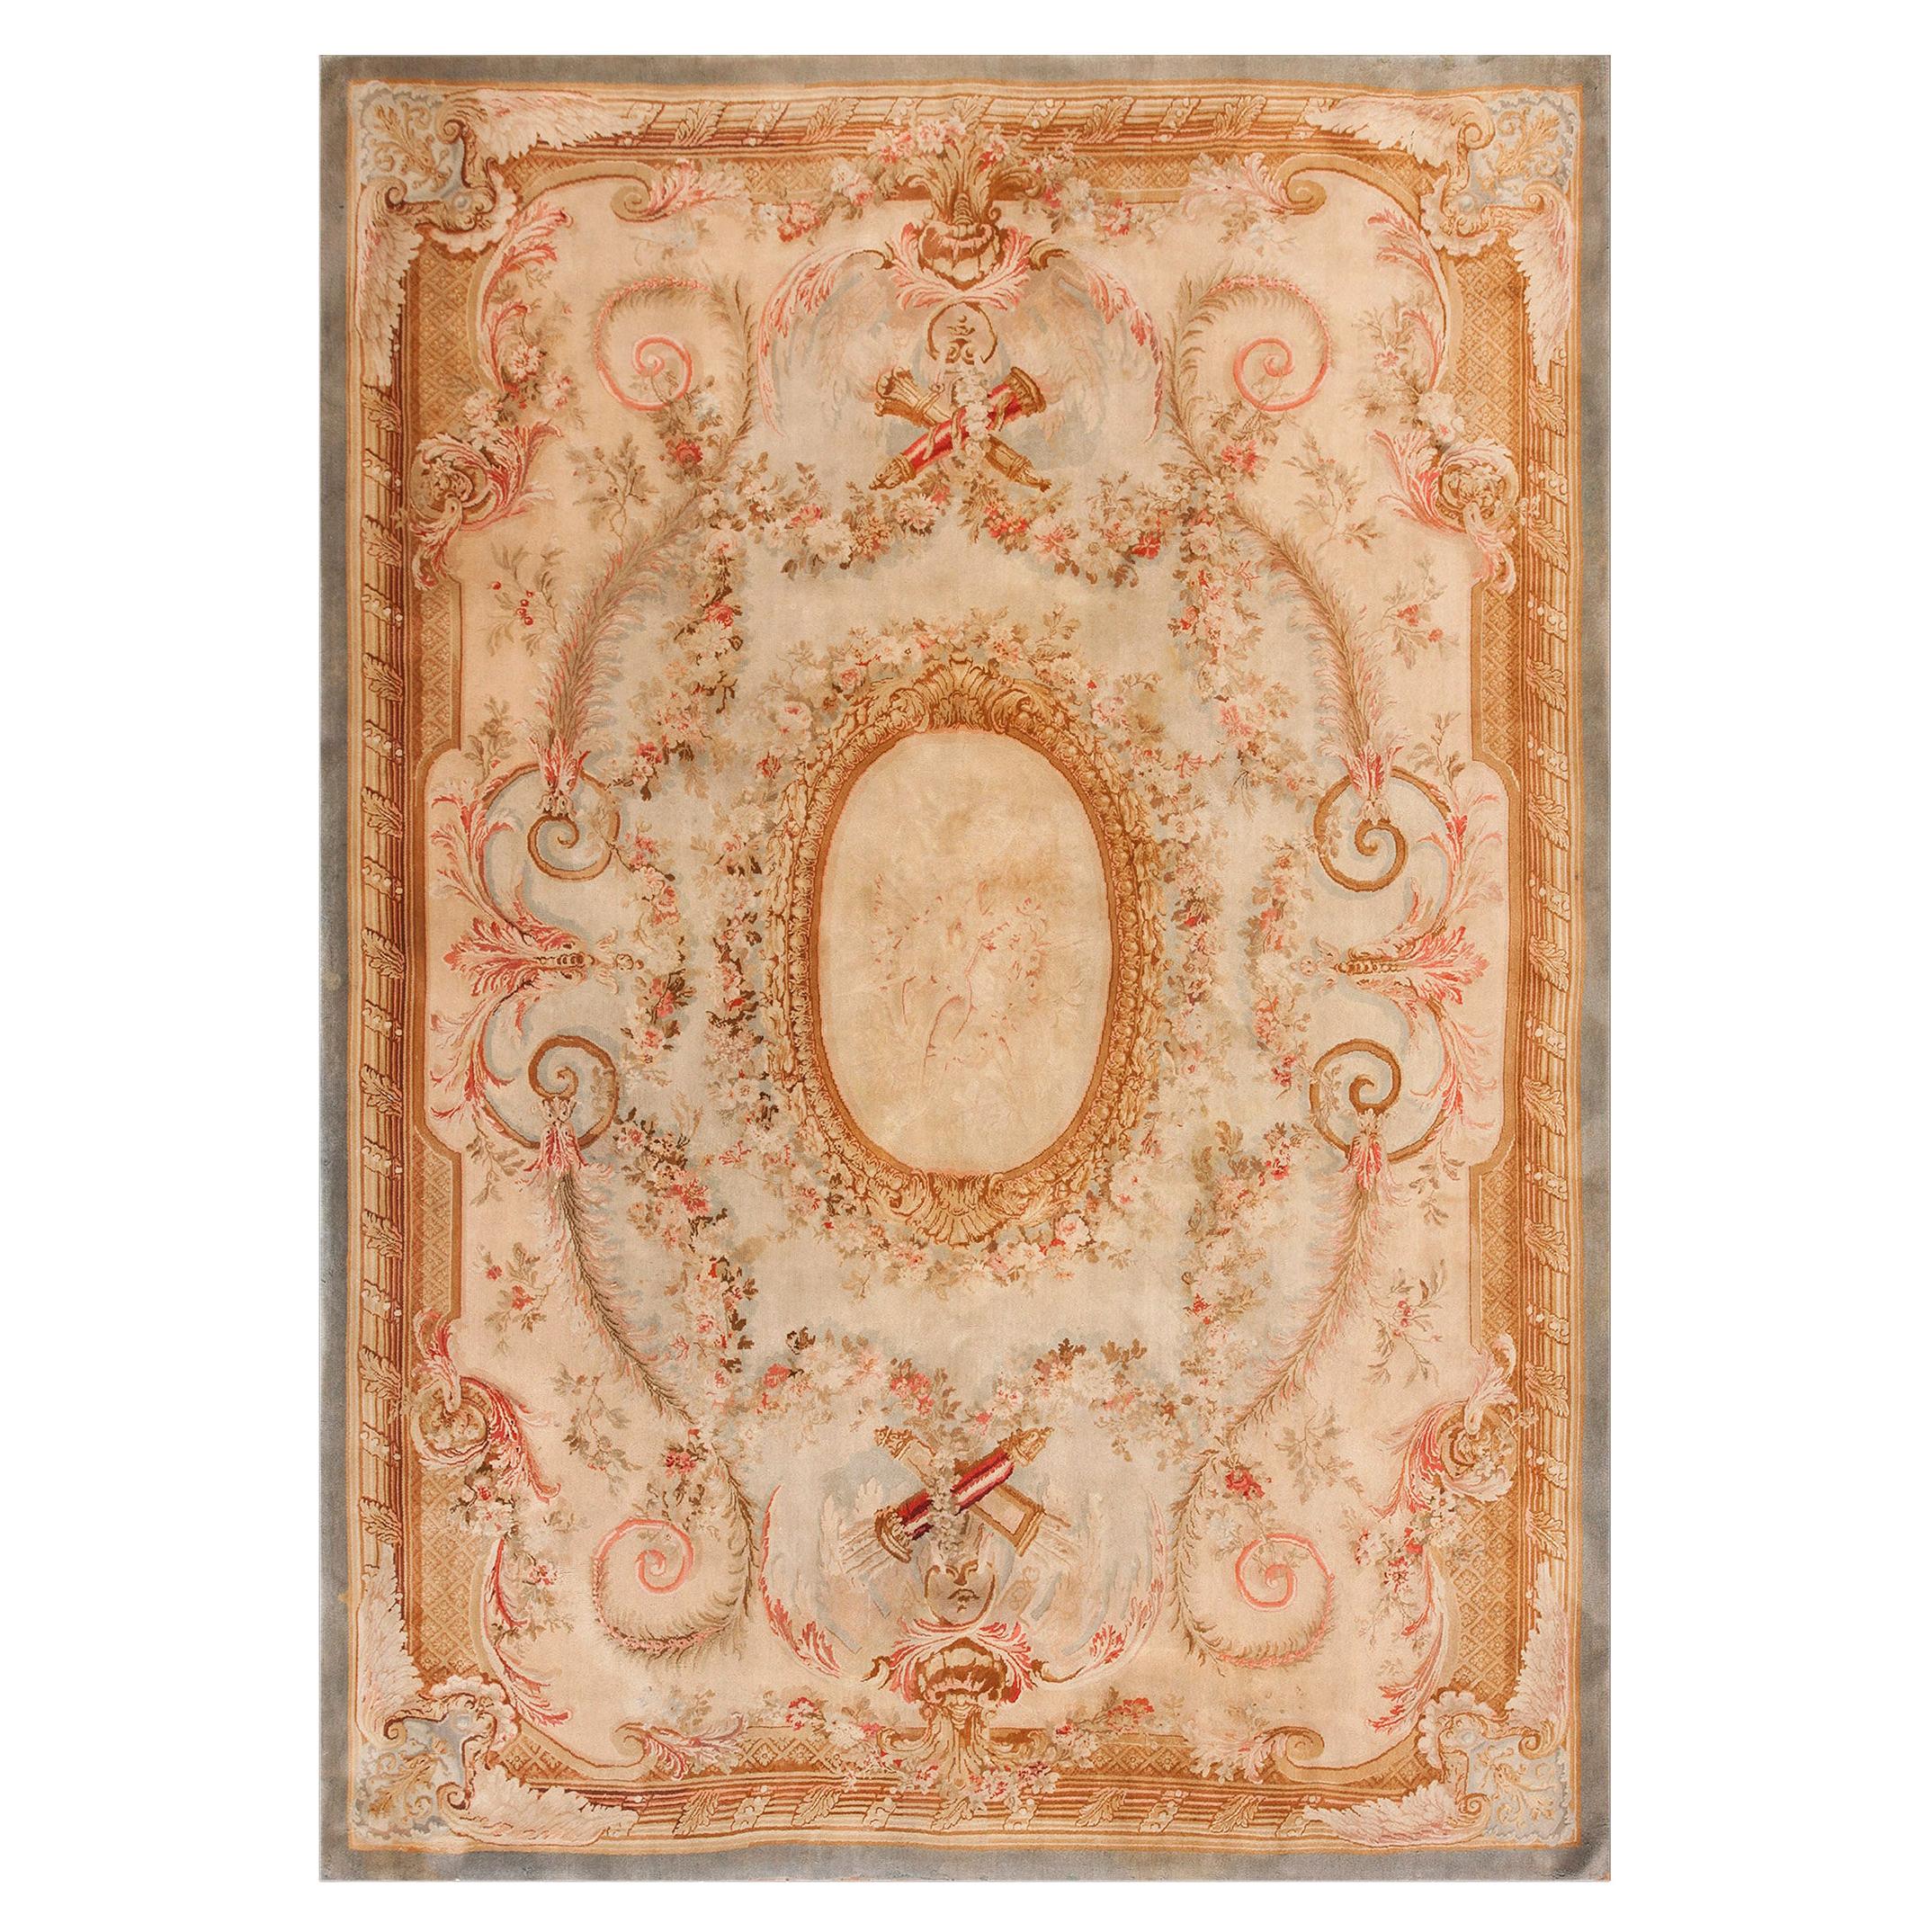 Französischer Savonnerie-Teppich des 19. Jahrhunderts ( 8'8" x 12'3" - 265 x 373")